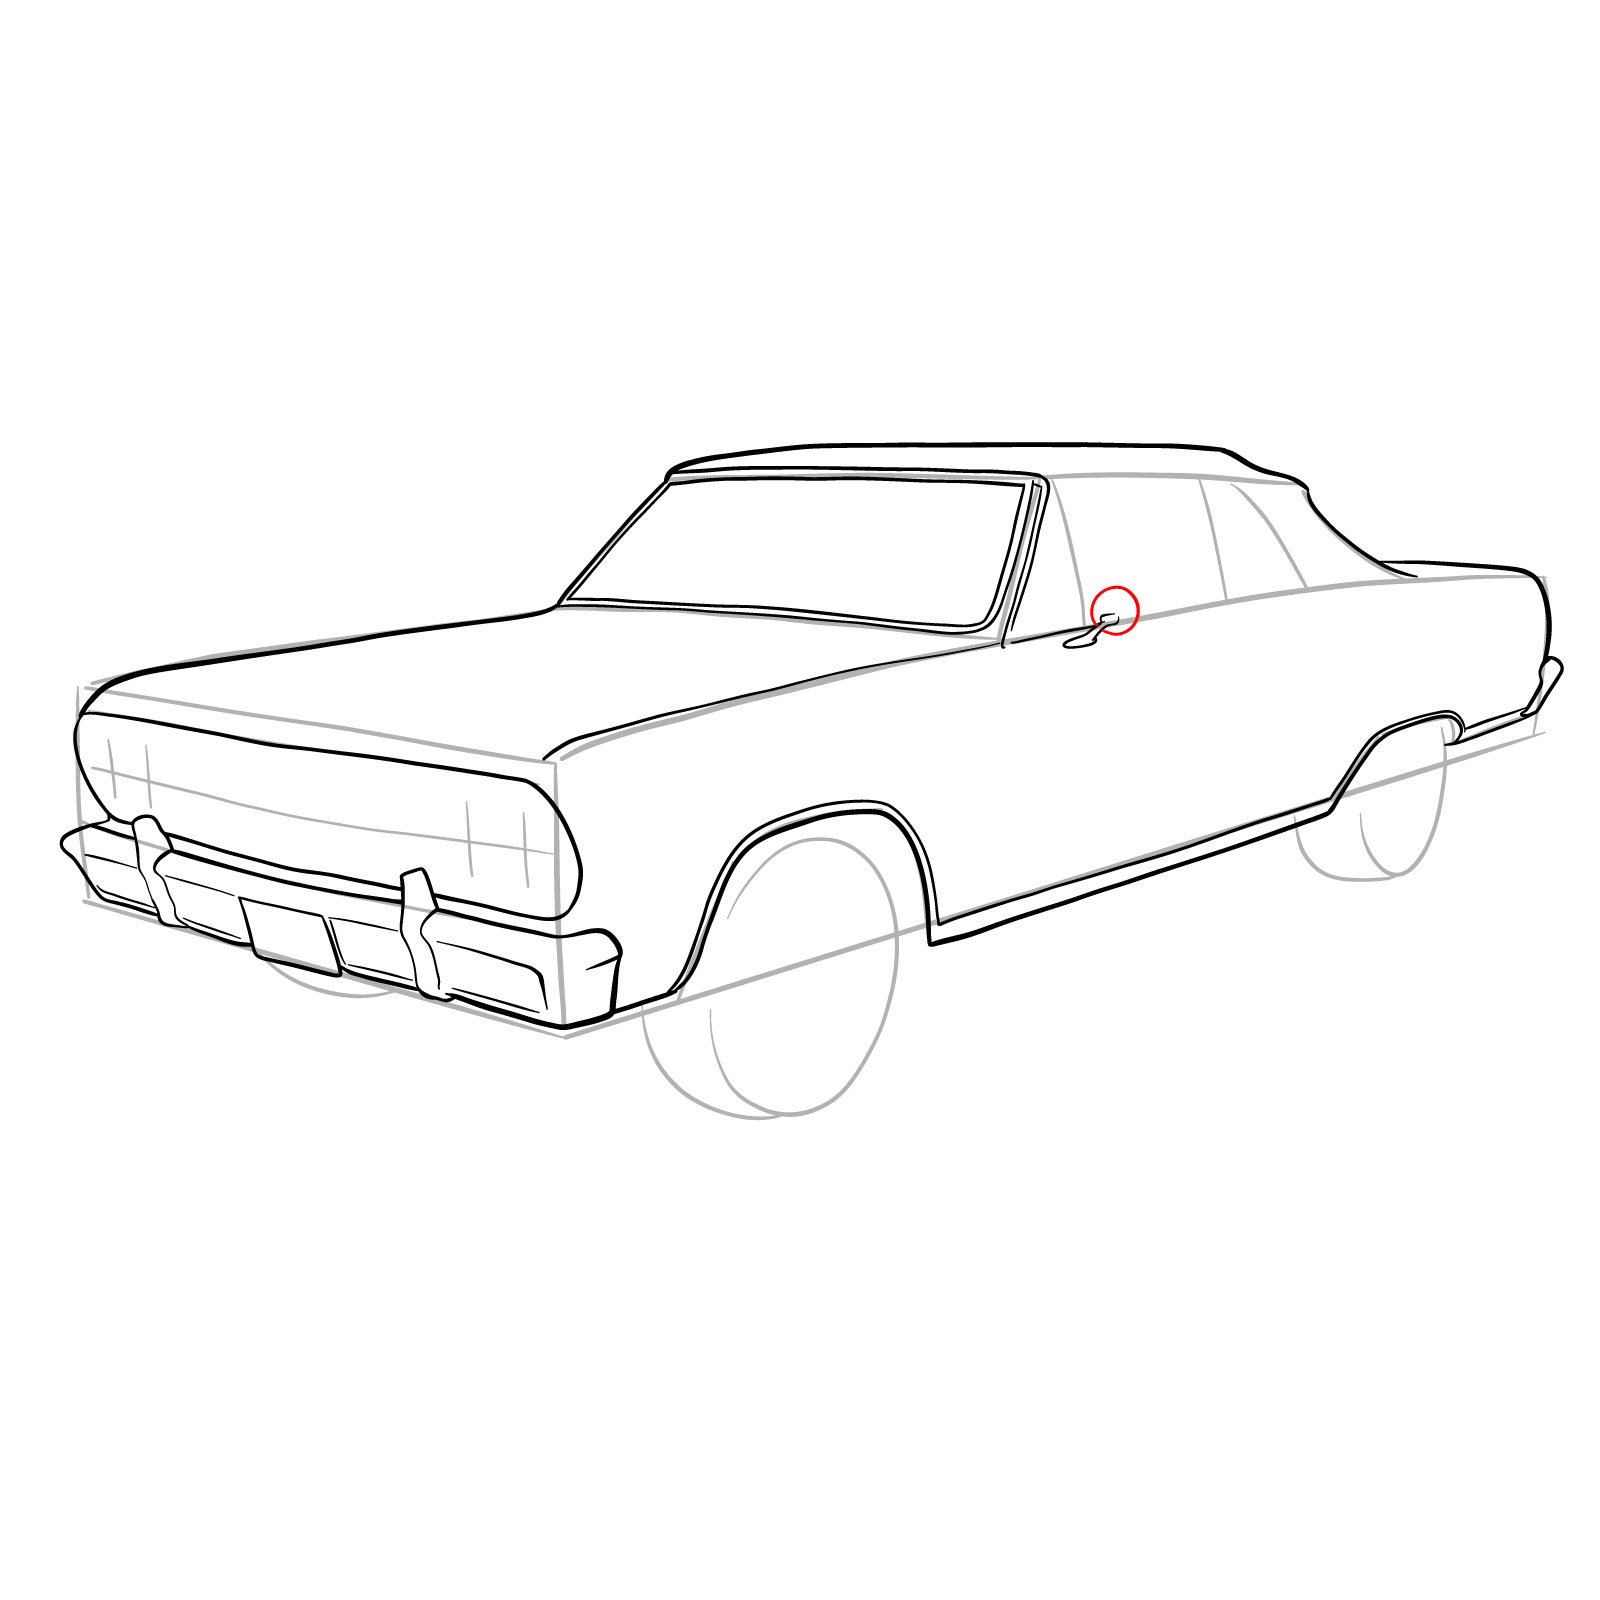 How to draw 1964 Chevrolet Malibu - step 20